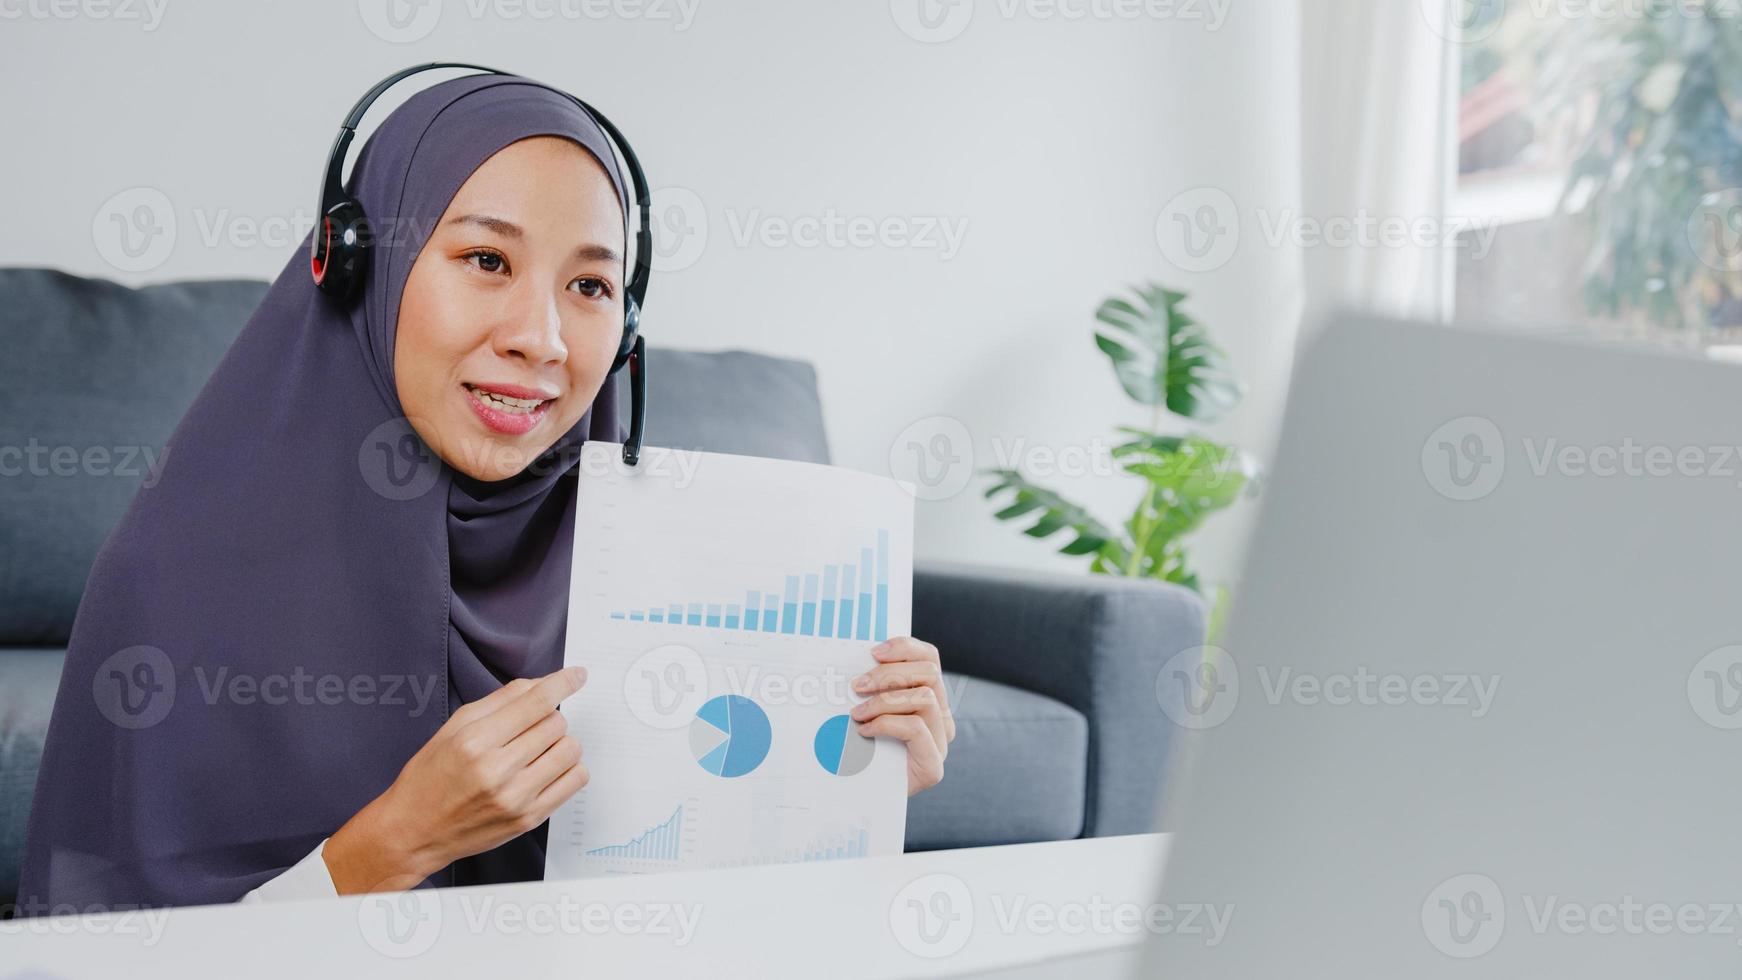 asien muslimsk dam bär hörlurar med bärbar dator prata med kollegor om försäljningsrapport i konferensvideosamtal medan du arbetar hemifrån i vardagsrummet. social distansering, karantän för corona. foto